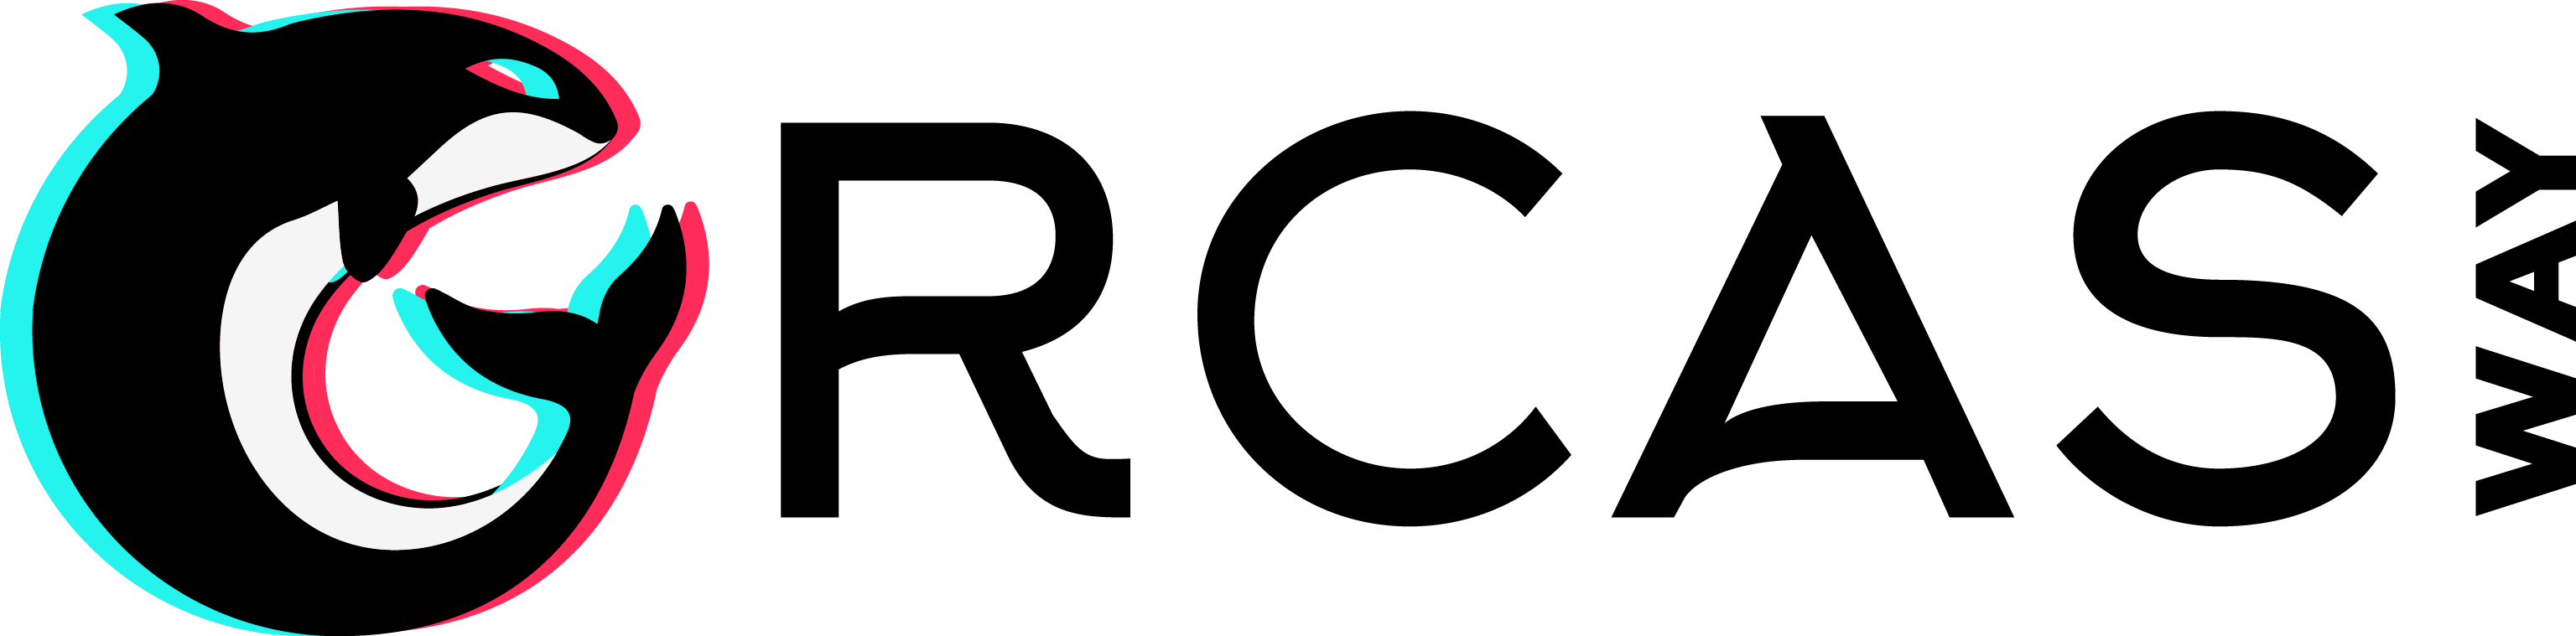 orcas way logo